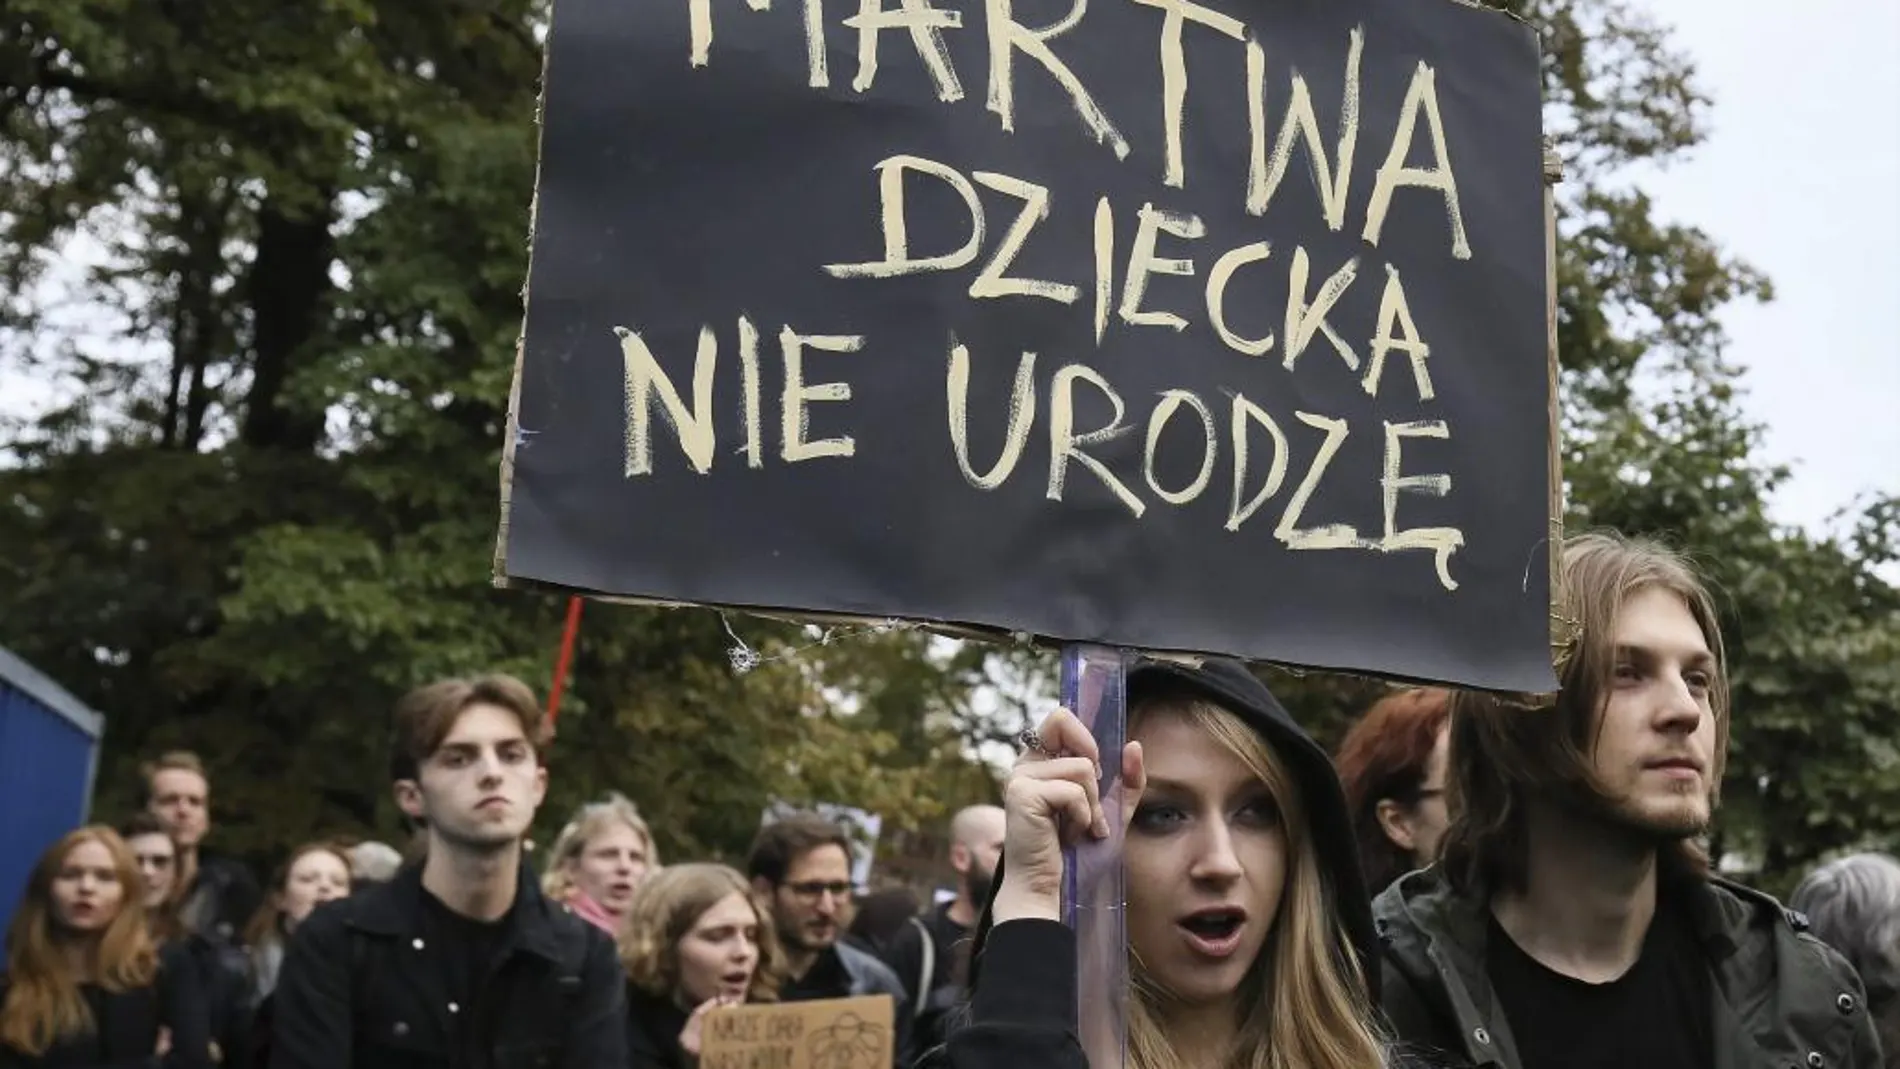 Una mujer sostiene un cartel en el que se lee "No daré a luz si estoy muerta"("I won't give birth if I'm dead) durante una protesta contra los planes del gobierno de introducir una nueva ley del aborto.